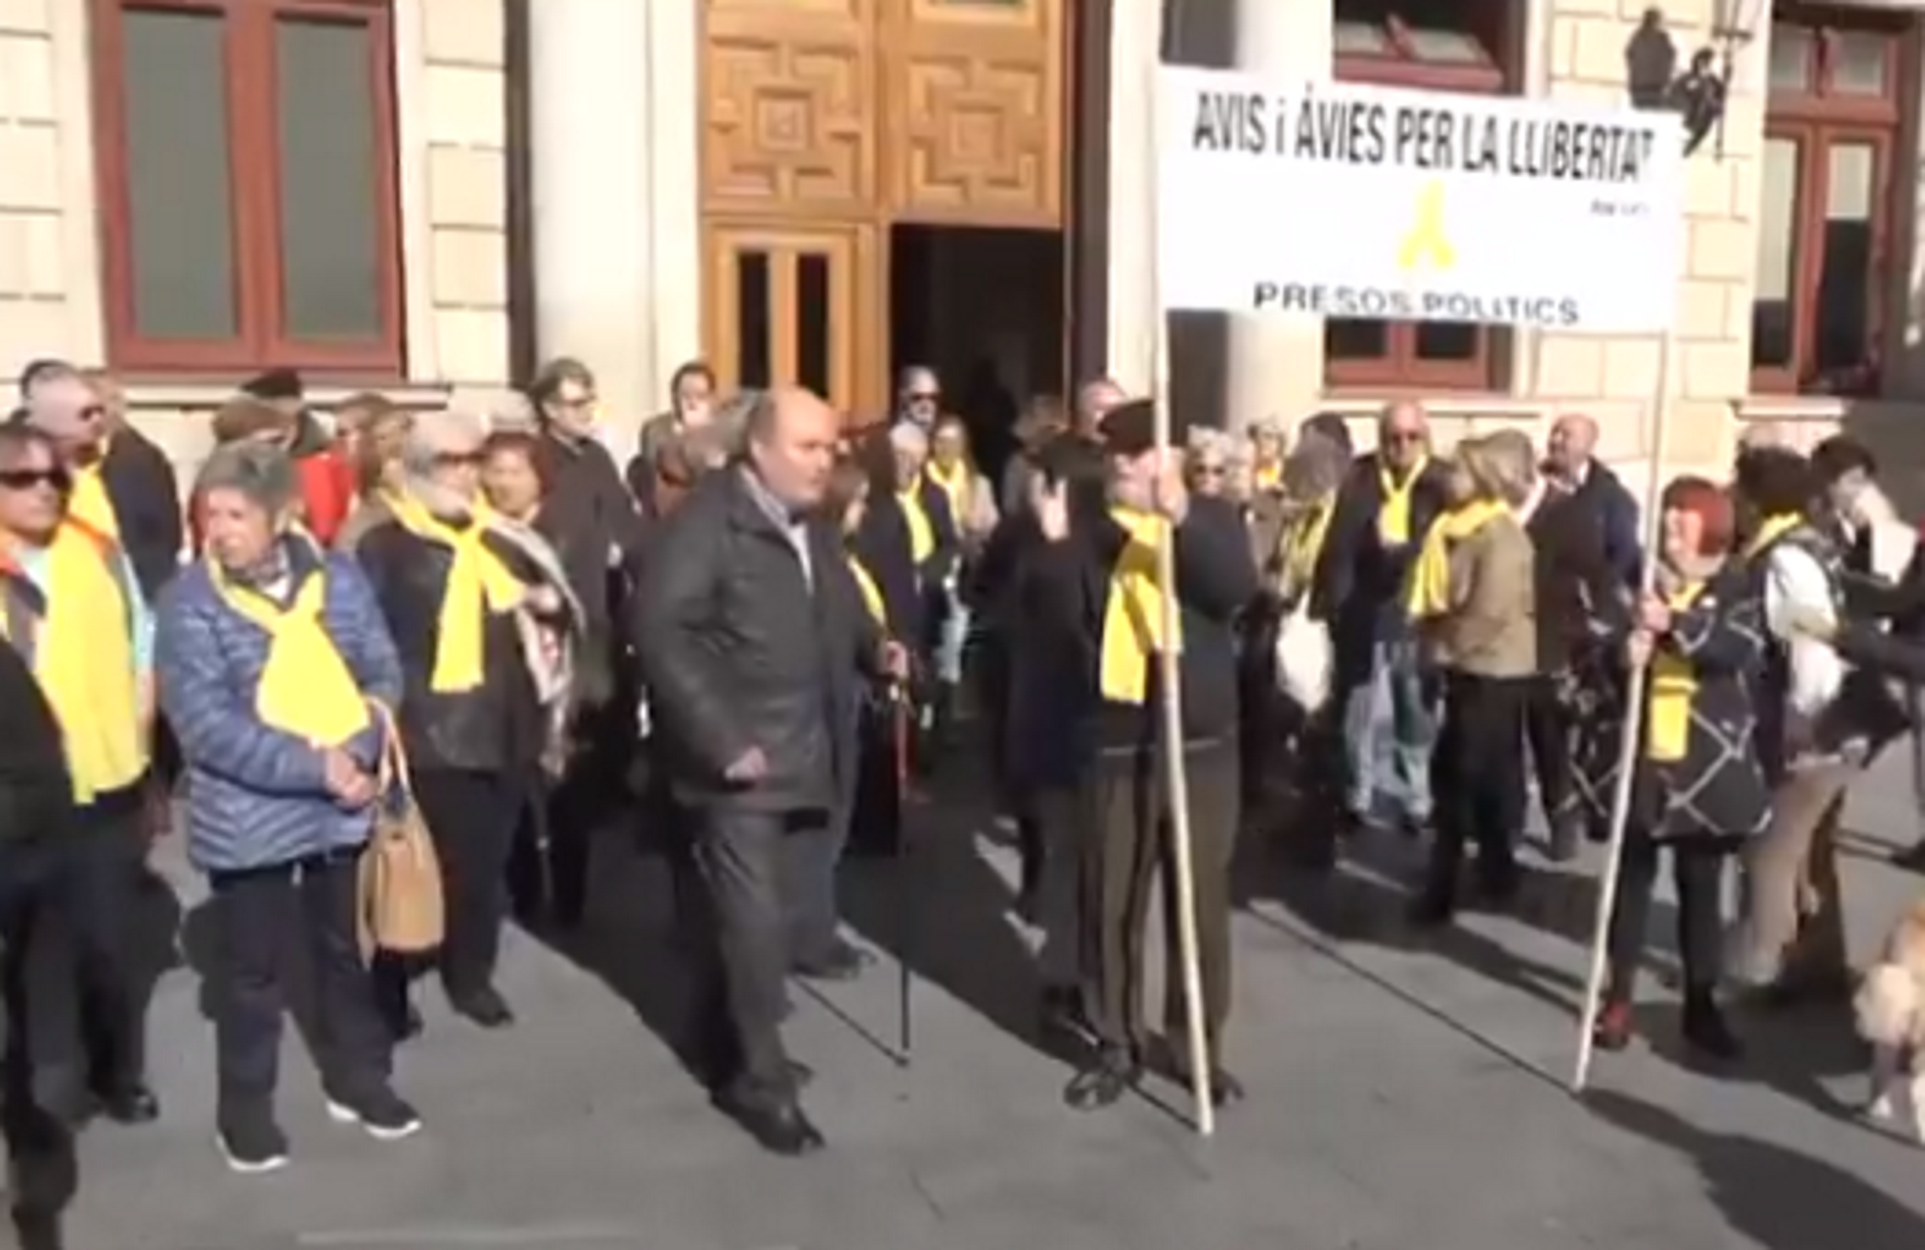 La Junta Electoral prohibeix a un grup d'avis manifestar-se pels presos polítics